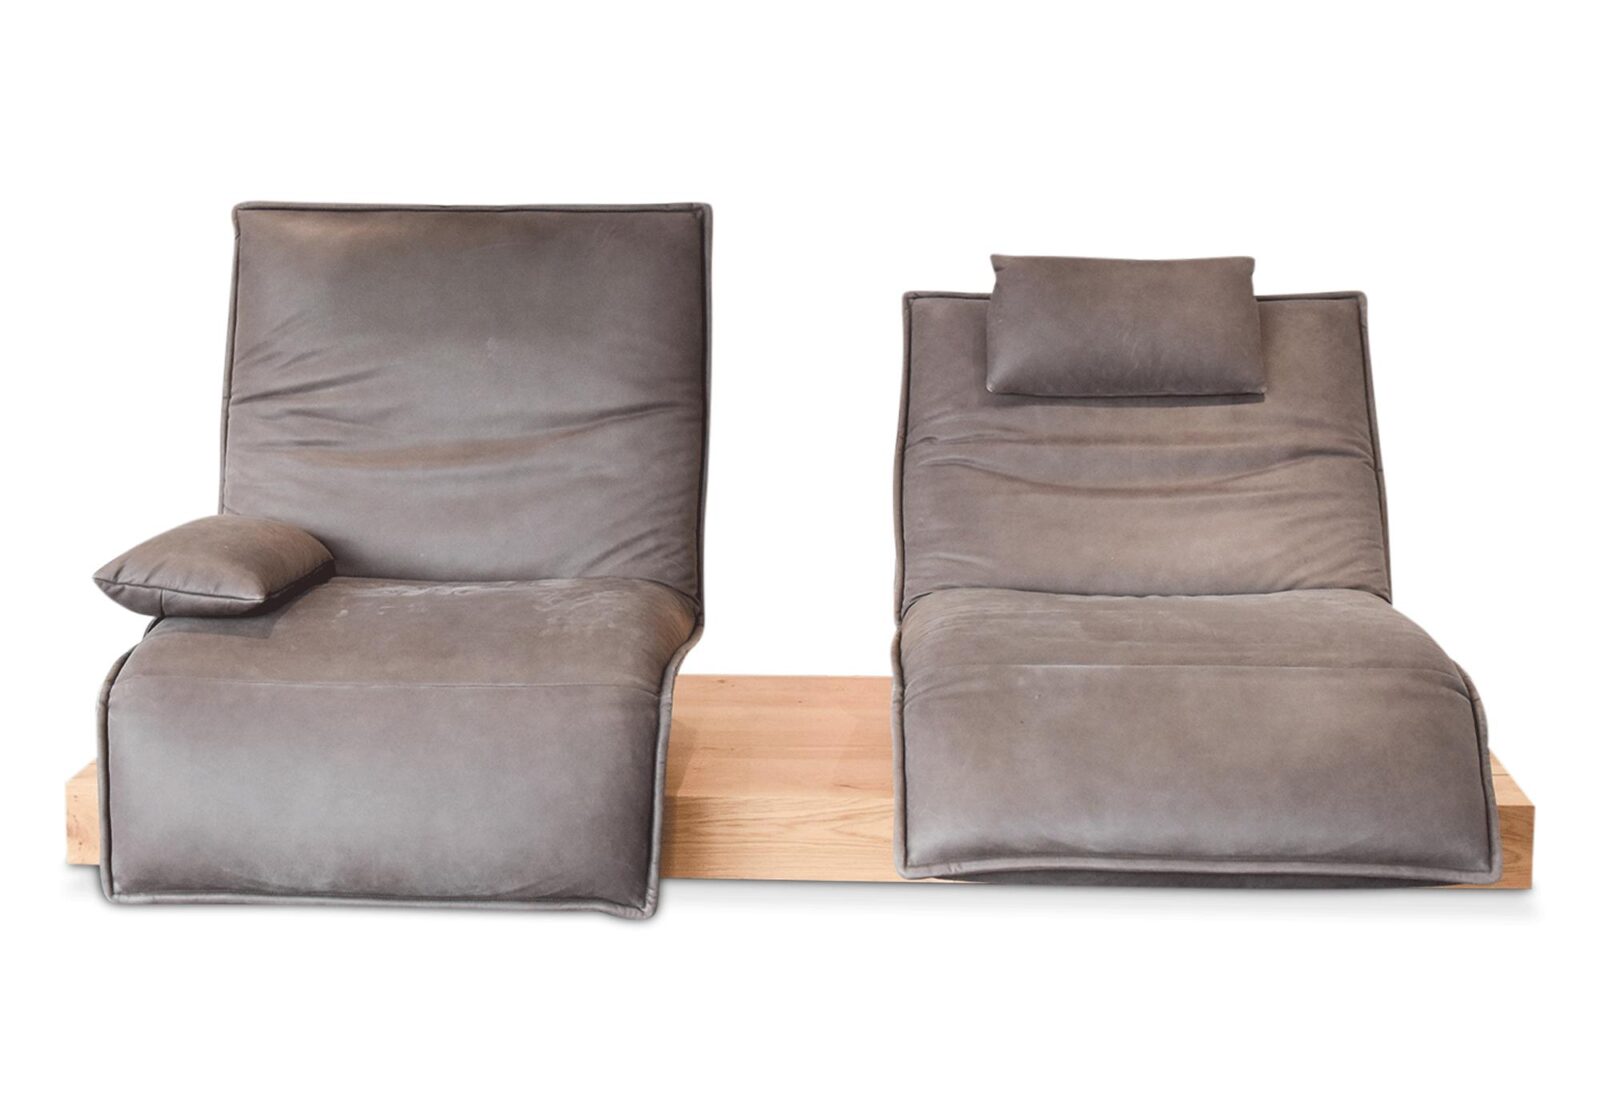 2er Sofa Epos mit Sitzverstellung. Bezug: Leder. Farbe: Mud. Erhältlich bei Möbel Gallati.